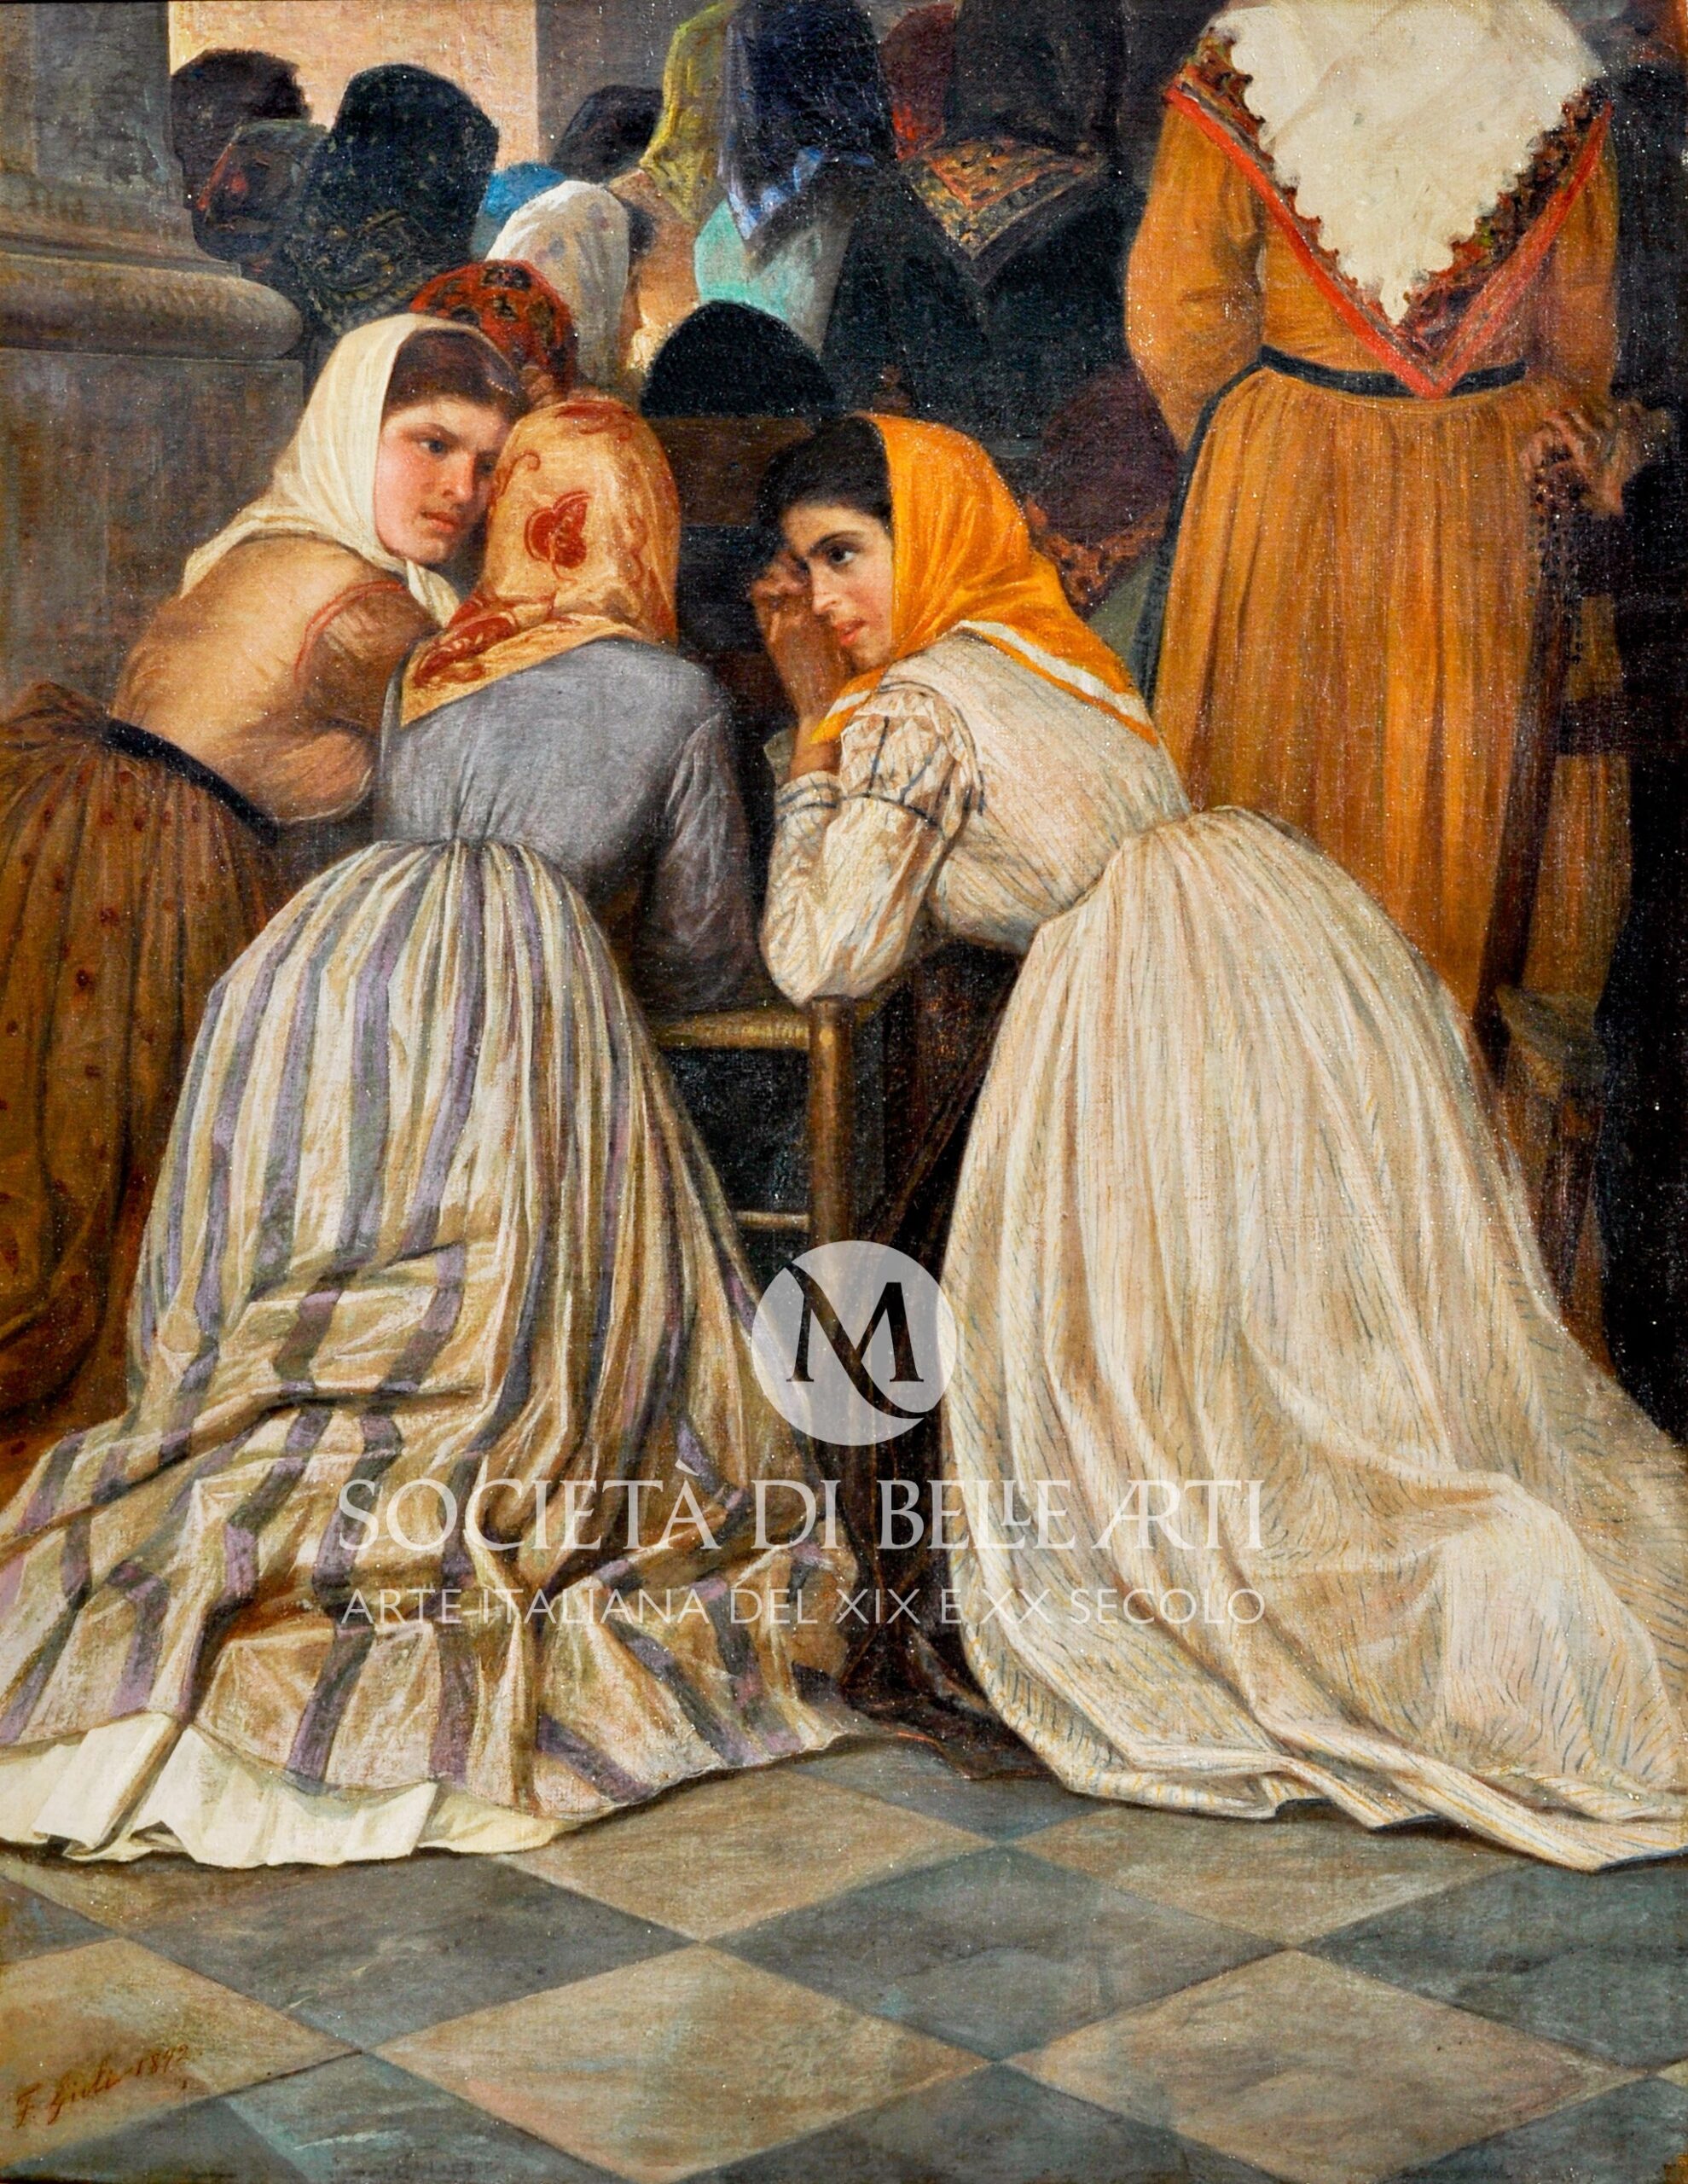 Francesco Gioli dipinti in vendita presso la Società di Belle Arti